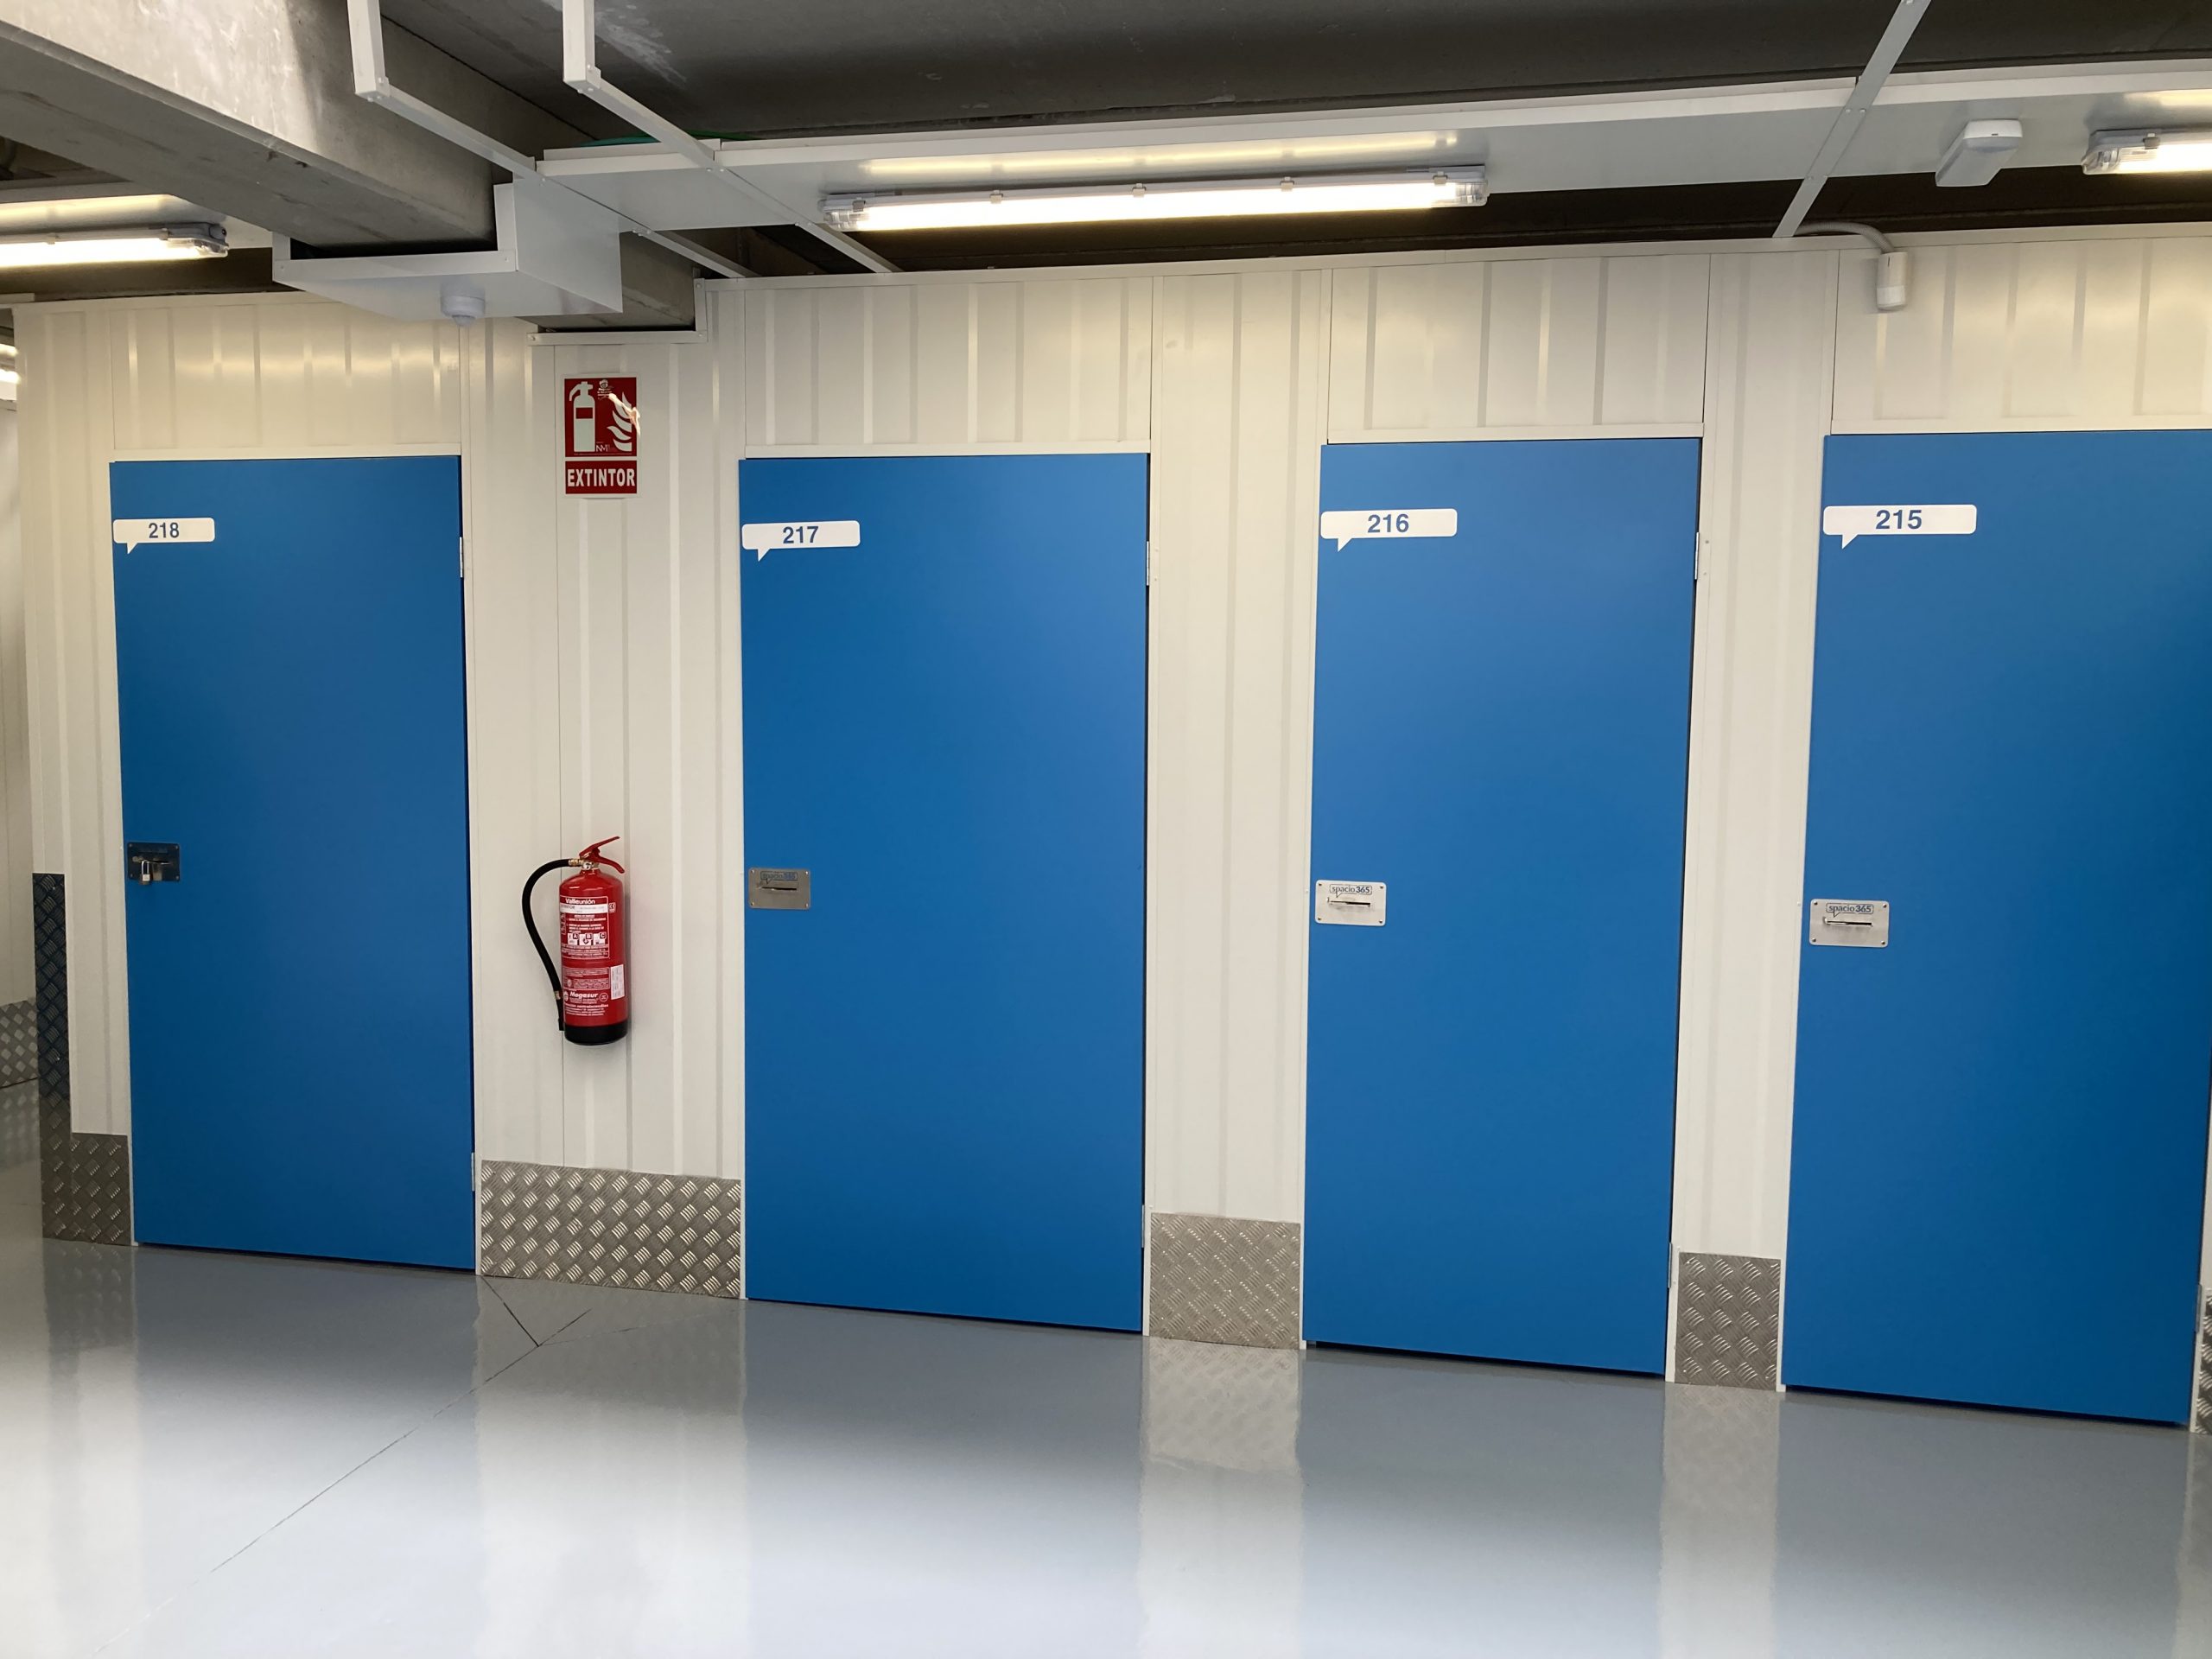 El self storage o alquiler de trasteros. puertas de entrada a trasteros, en color azul, que es el color corporativo de Spacio365